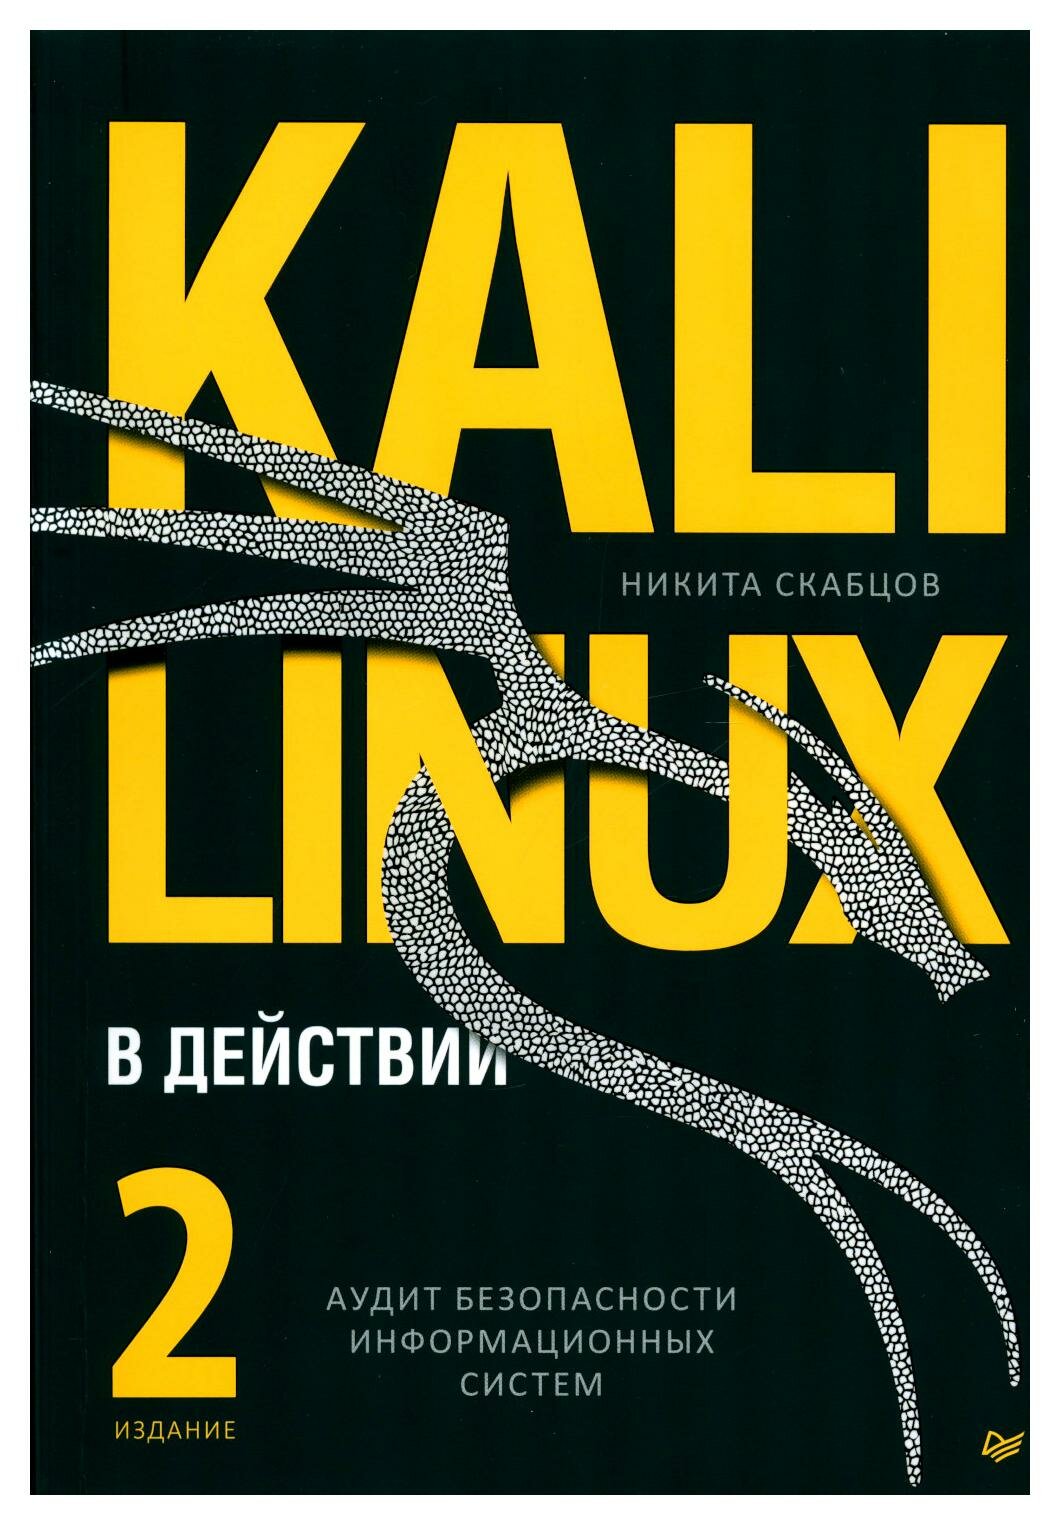 Kali Linux в действии. Аудит безопасности информационных систем. 2-е изд. Скабцов Н. Питер